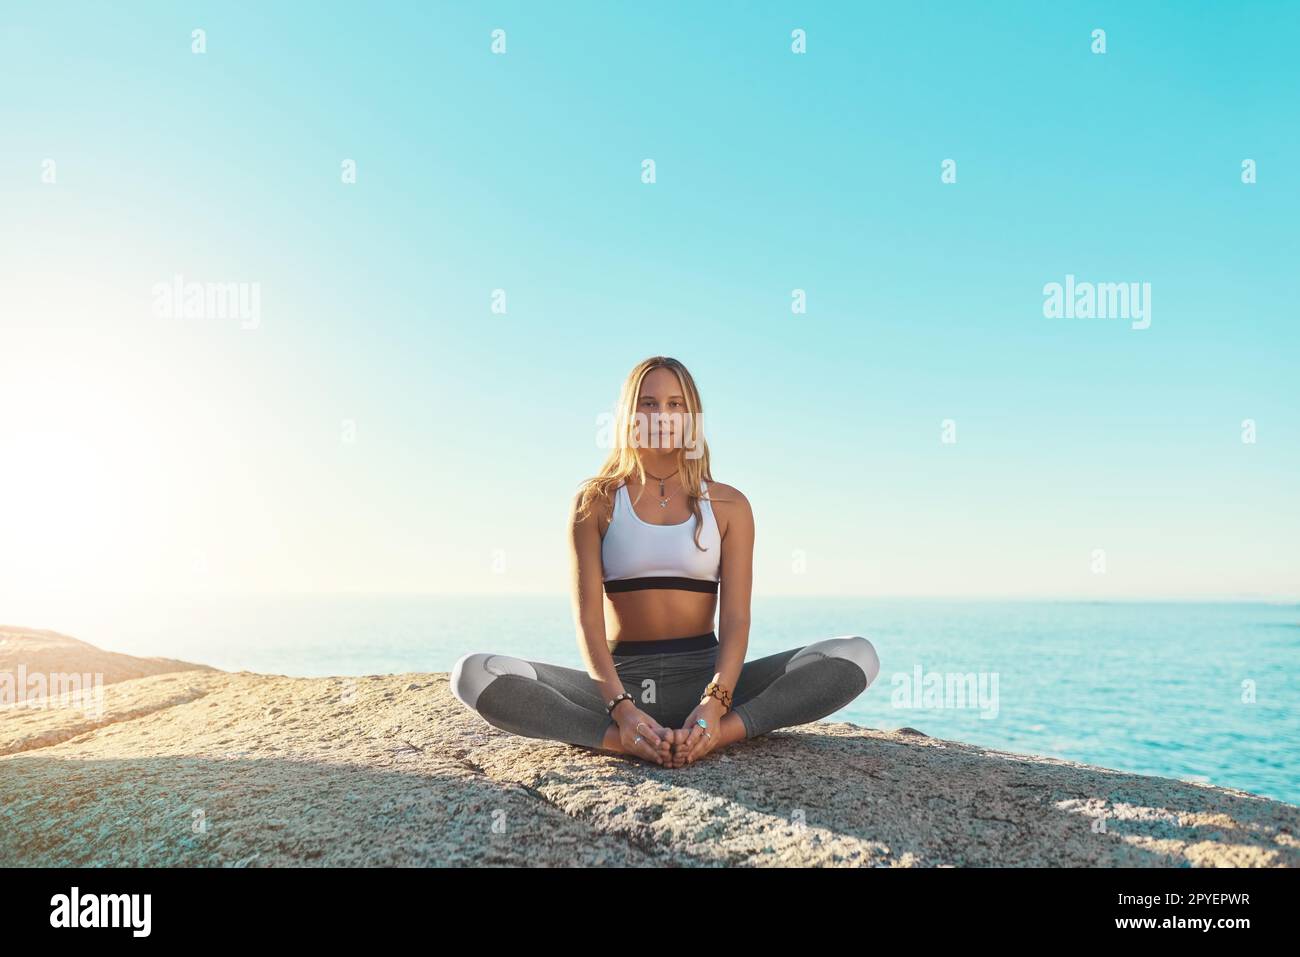 Yoga ist der Grund, warum ich ein glücklicheres Leben führe. Eine junge Frau, die am Strand Yoga macht. Stockfoto